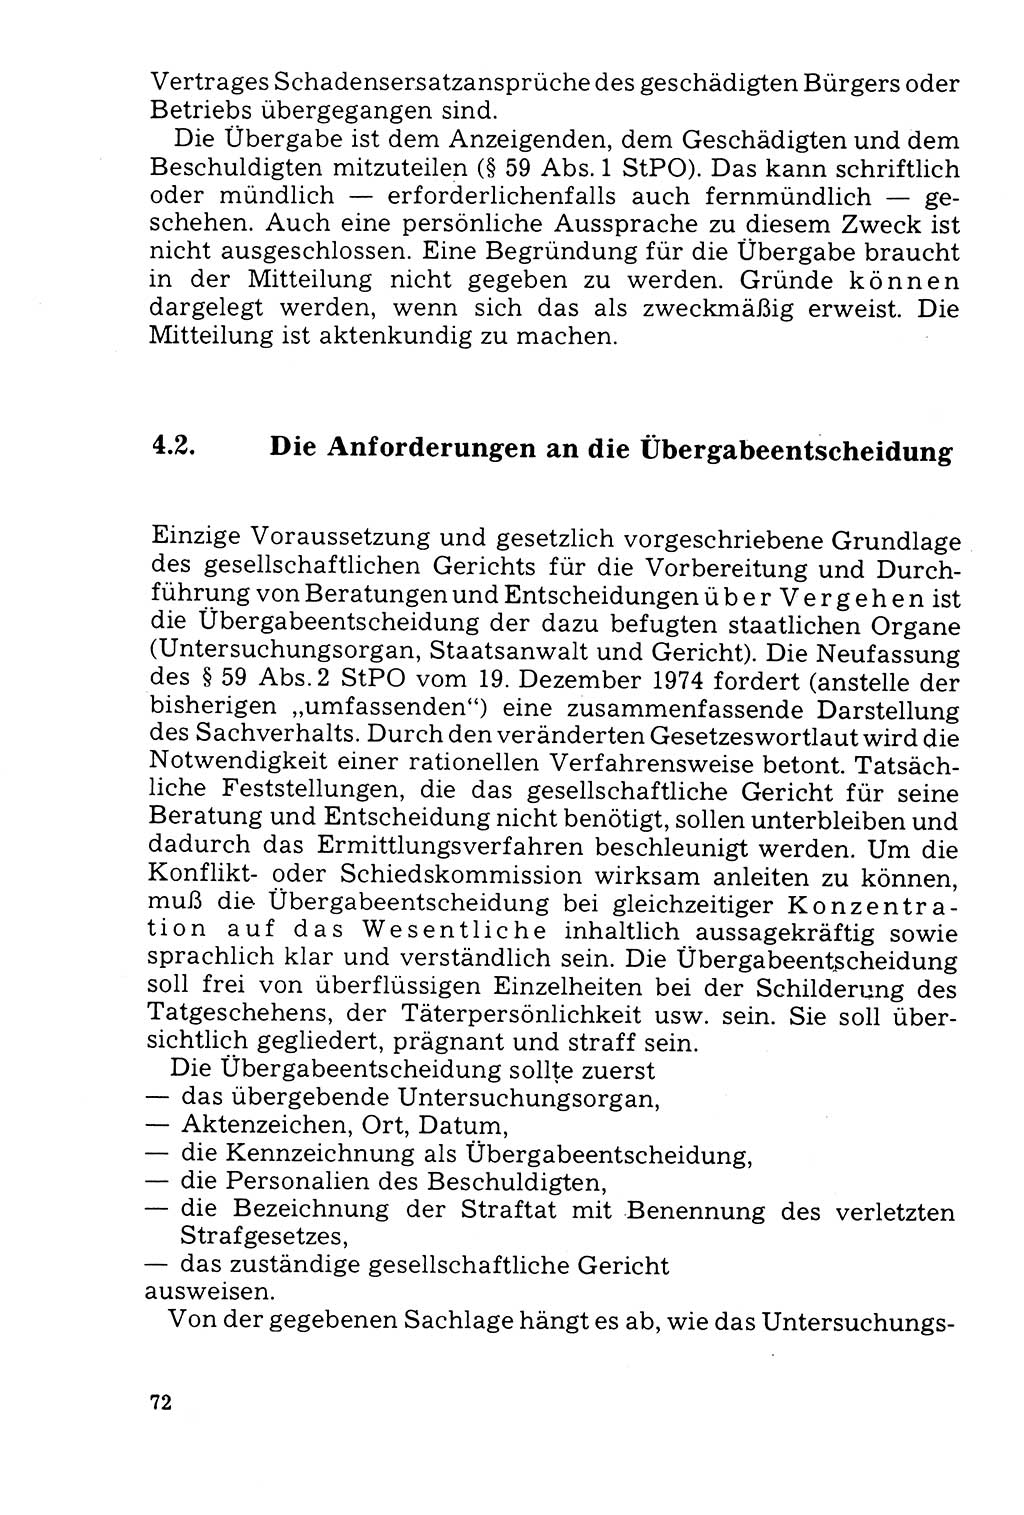 Der AbschluÃŸ des Ermittlungsverfahrens [Deutsche Demokratische Republik (DDR)] 1978, Seite 72 (Abschl. EV DDR 1978, S. 72)